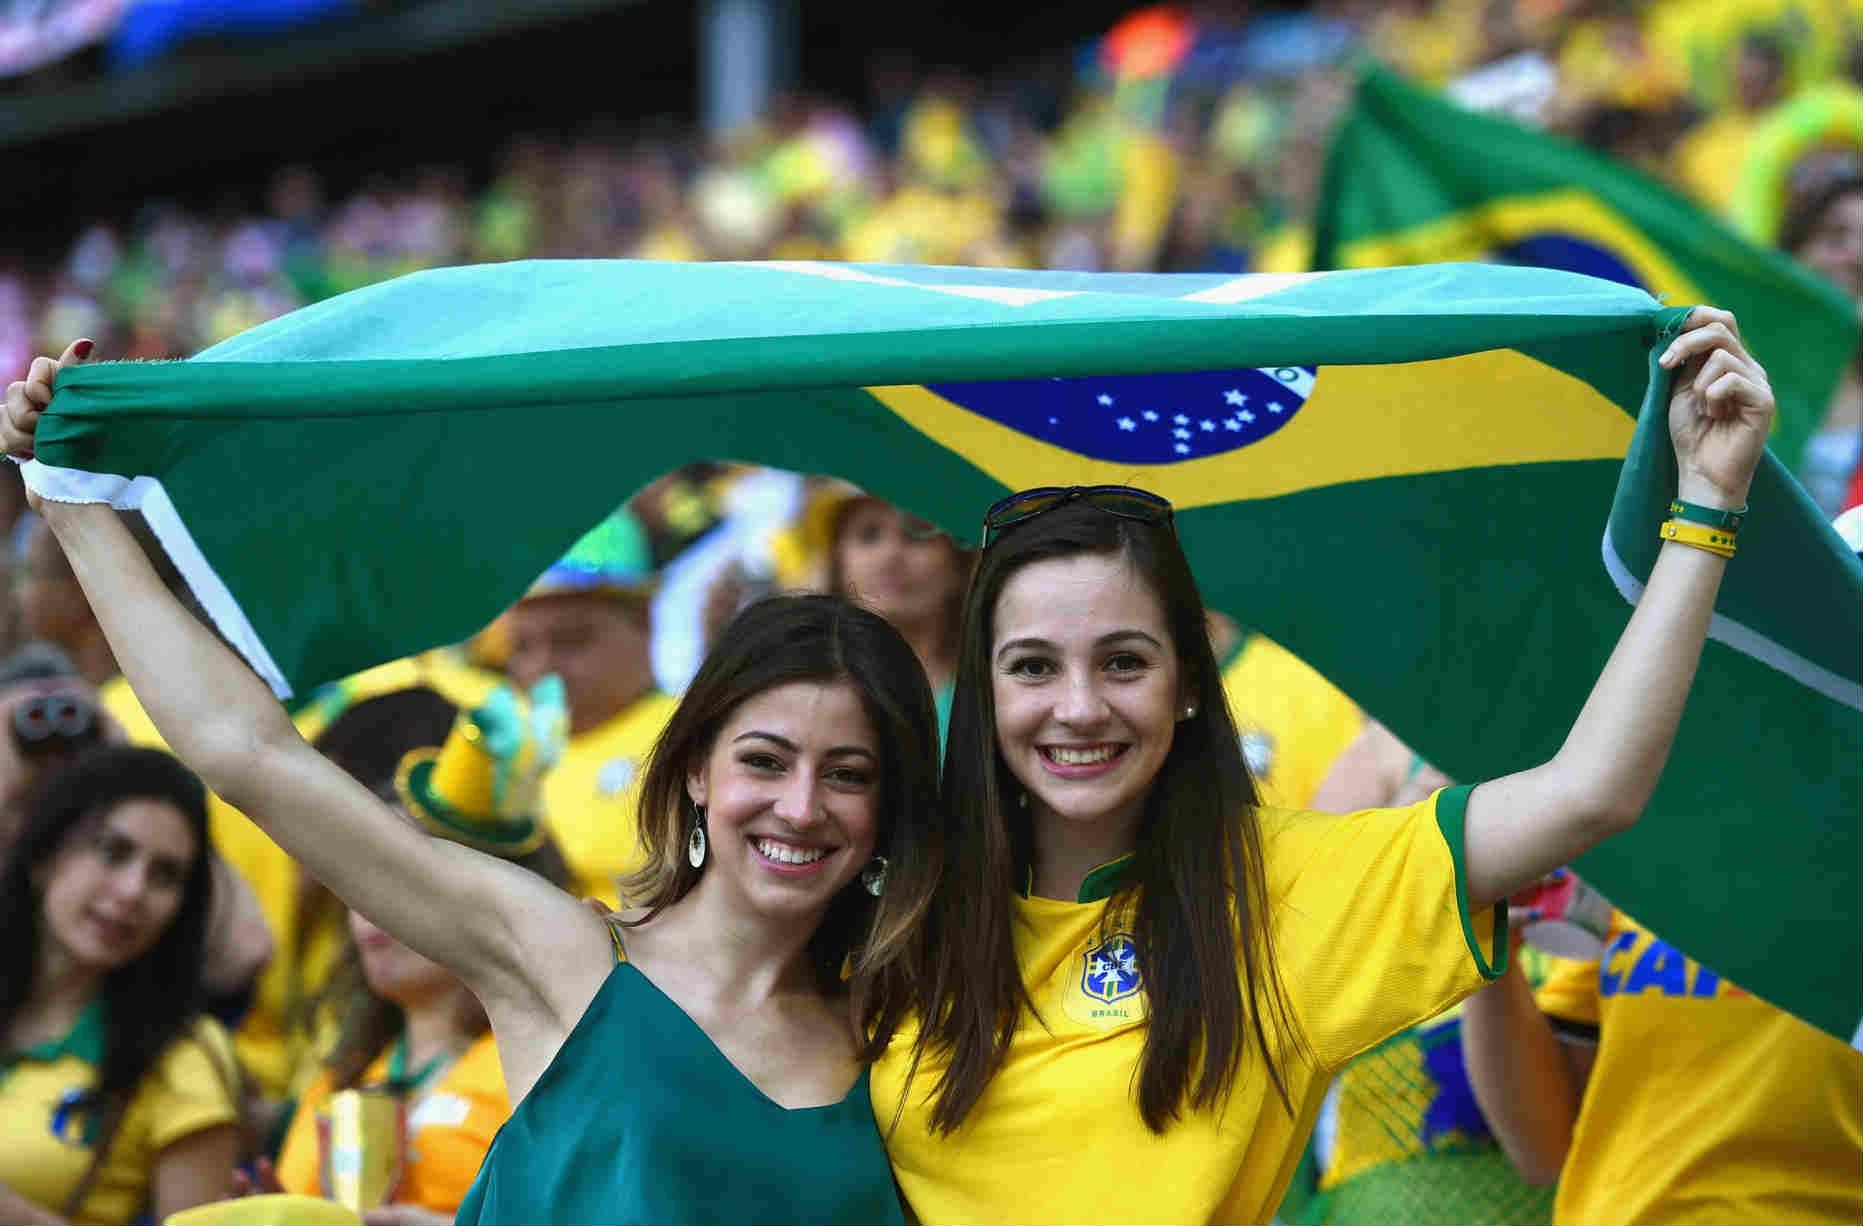 Top 10 quốc gia có cổ động viên bóng đá nữ nóng bỏng nhất